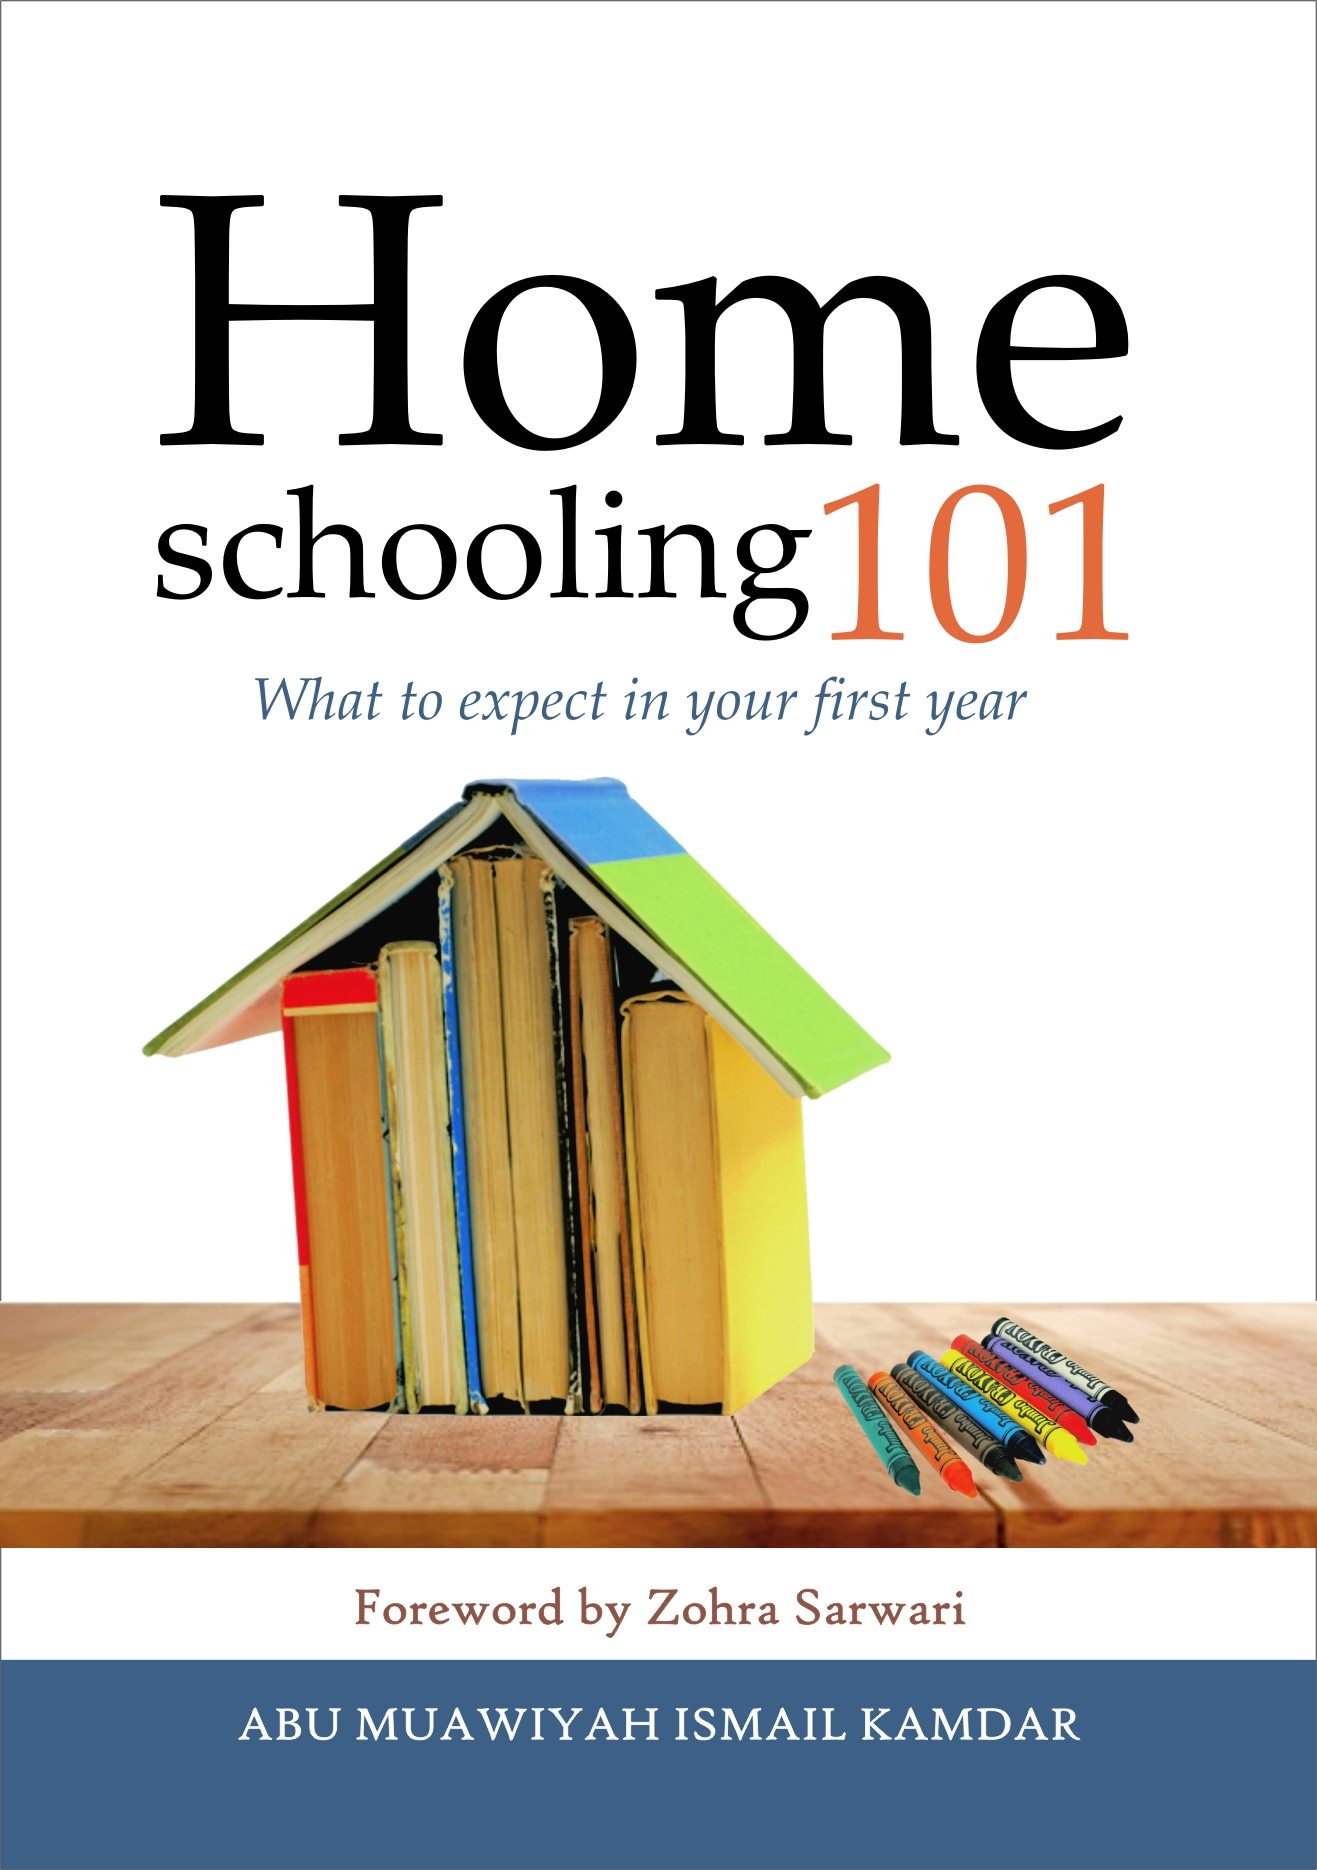 Homeschooling 101 Ebook Launch